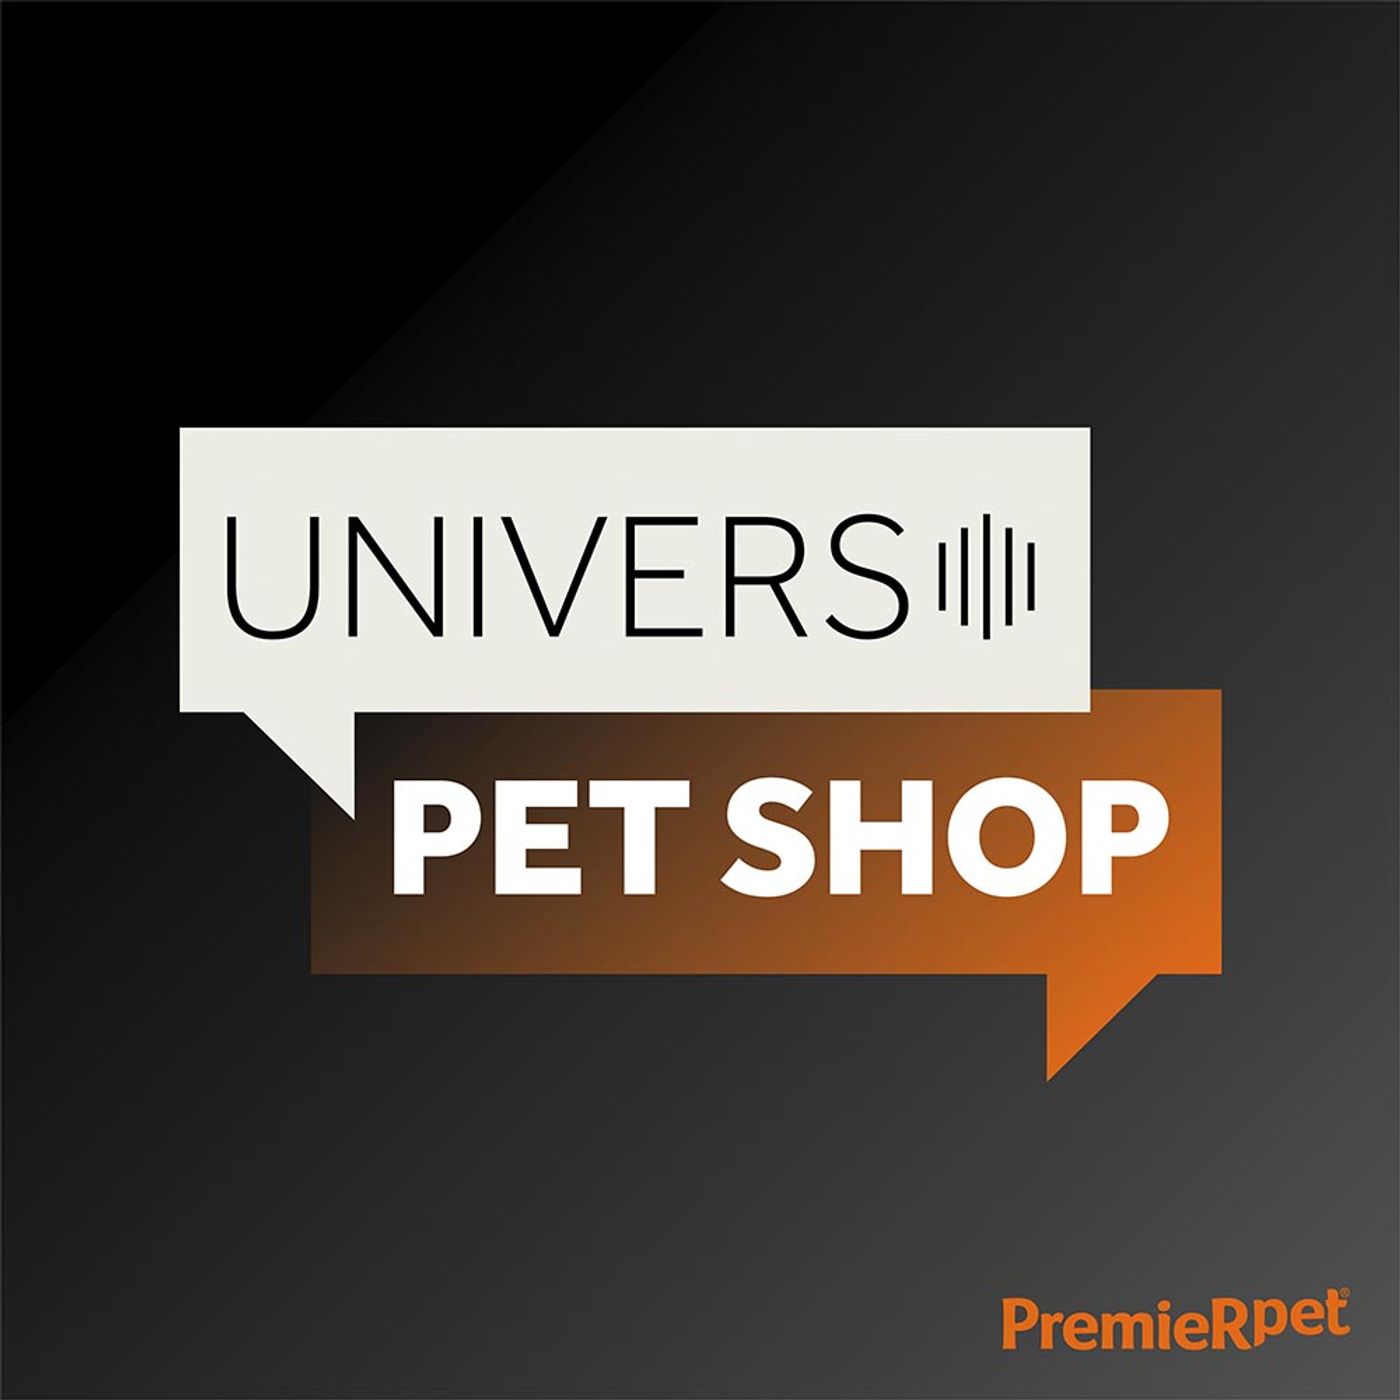 EP9 | Desafios de gerenciar uma rede de petshops | Universo Pet Shop | PremieRpet